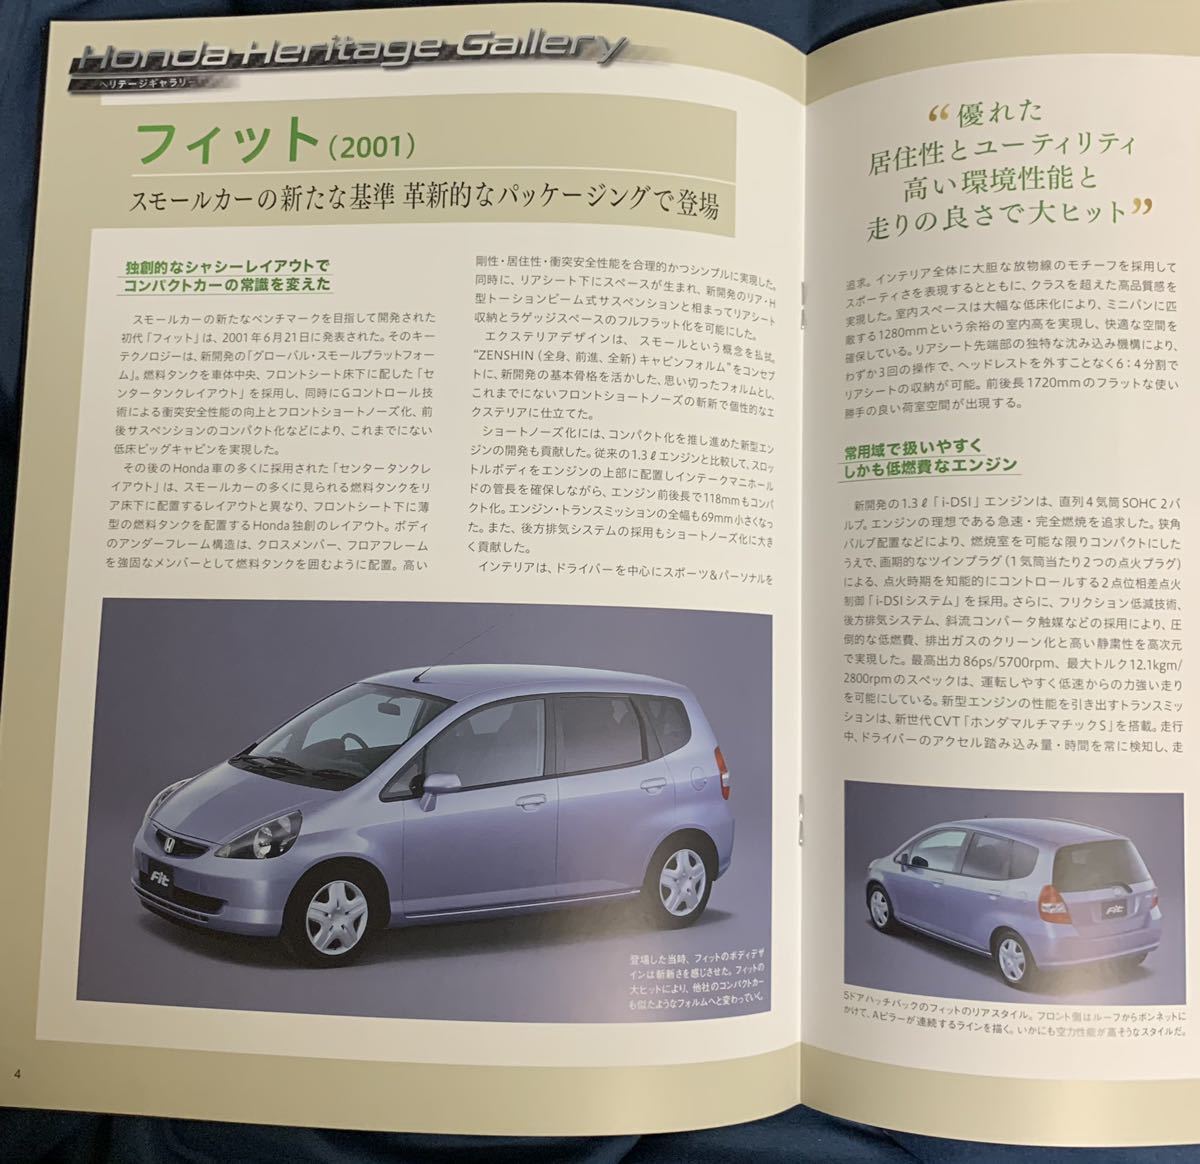  der Goss чай niDeAGOSTINI Honda Honda NSX 71 номер Fit (2001) брошюра только детали нет почти новый товар клик post 185 иен отправка 